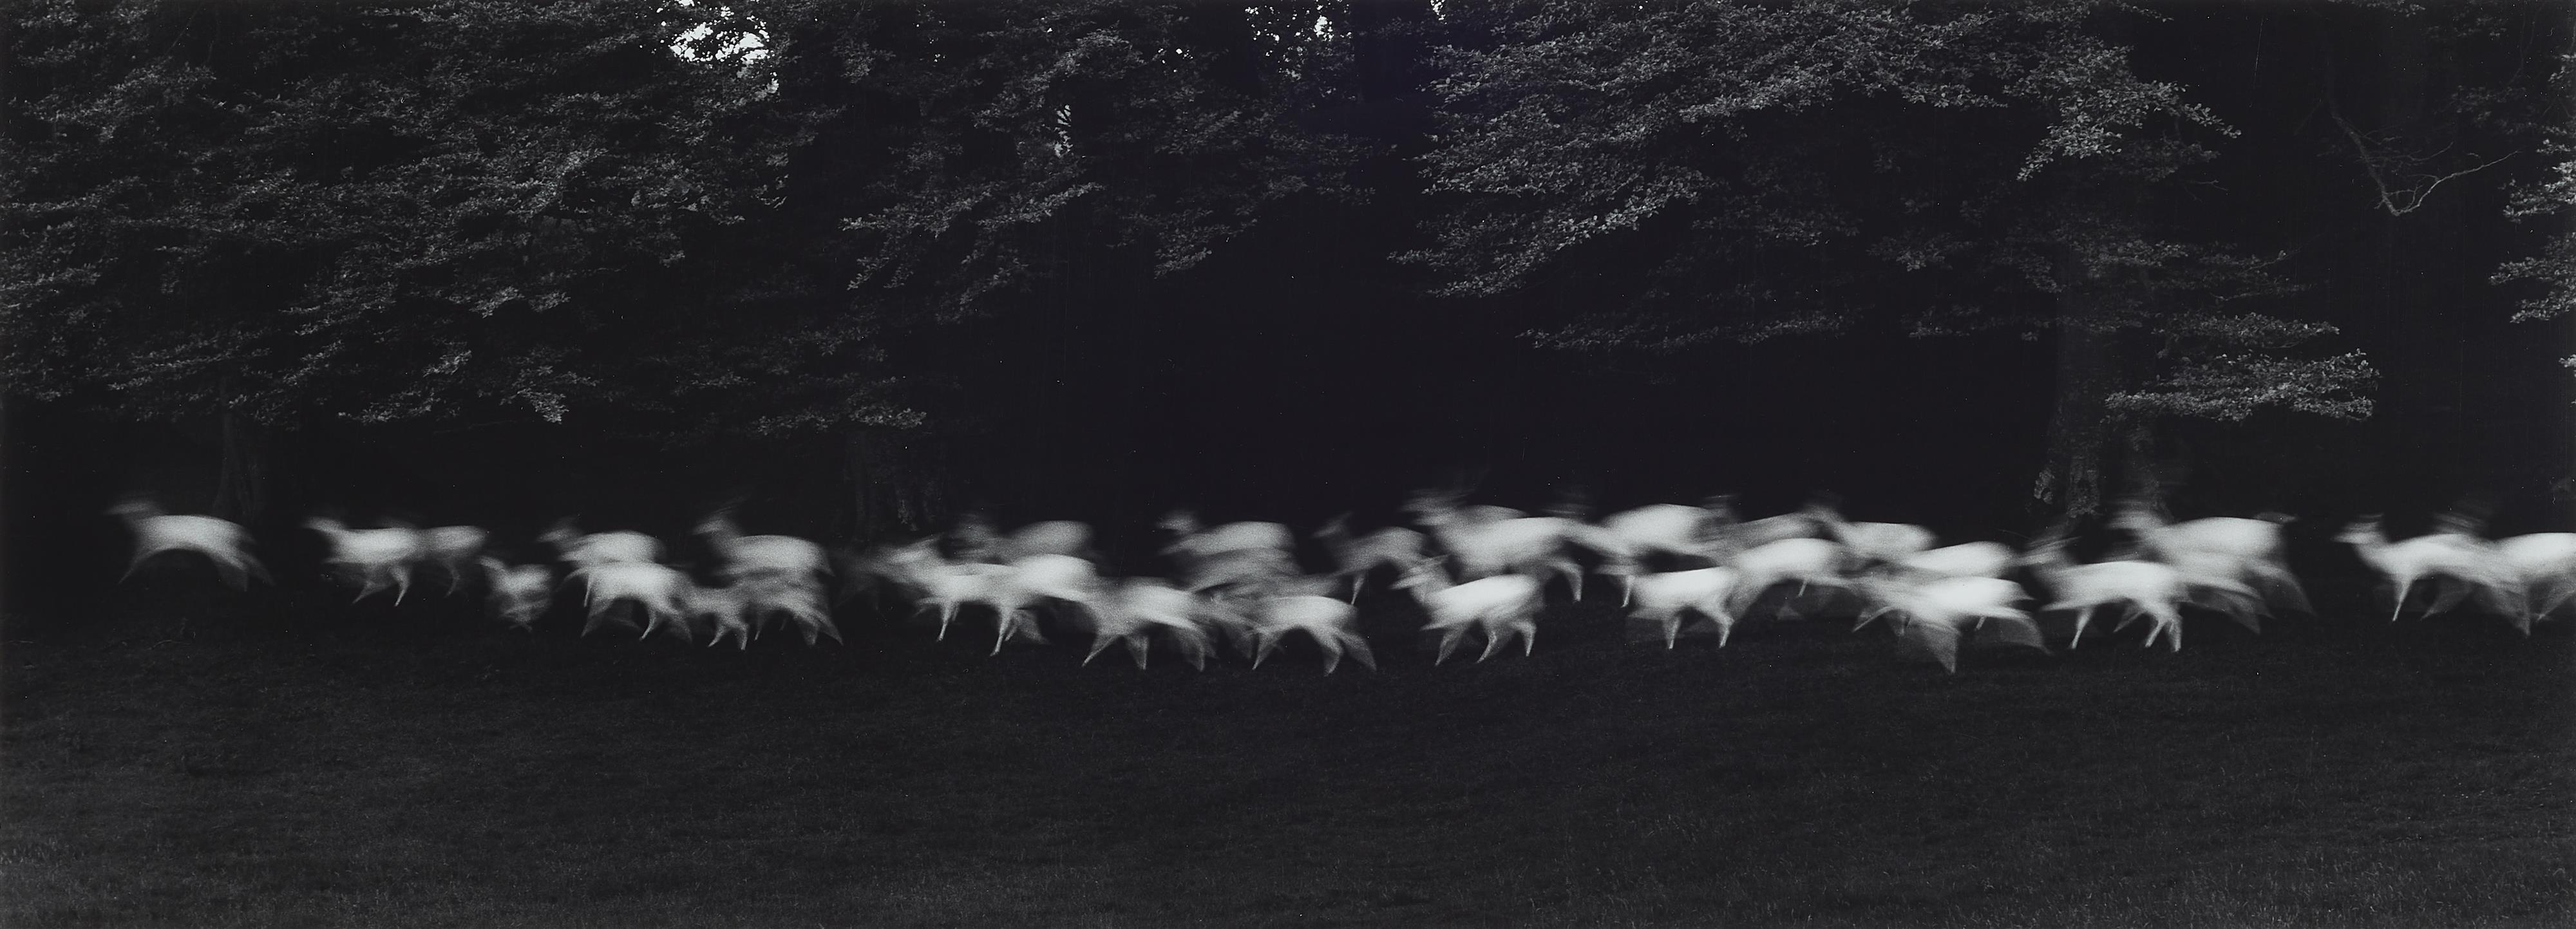 Paul Caponigro - Running White Deer, County Wicklow, Ireland - image-1